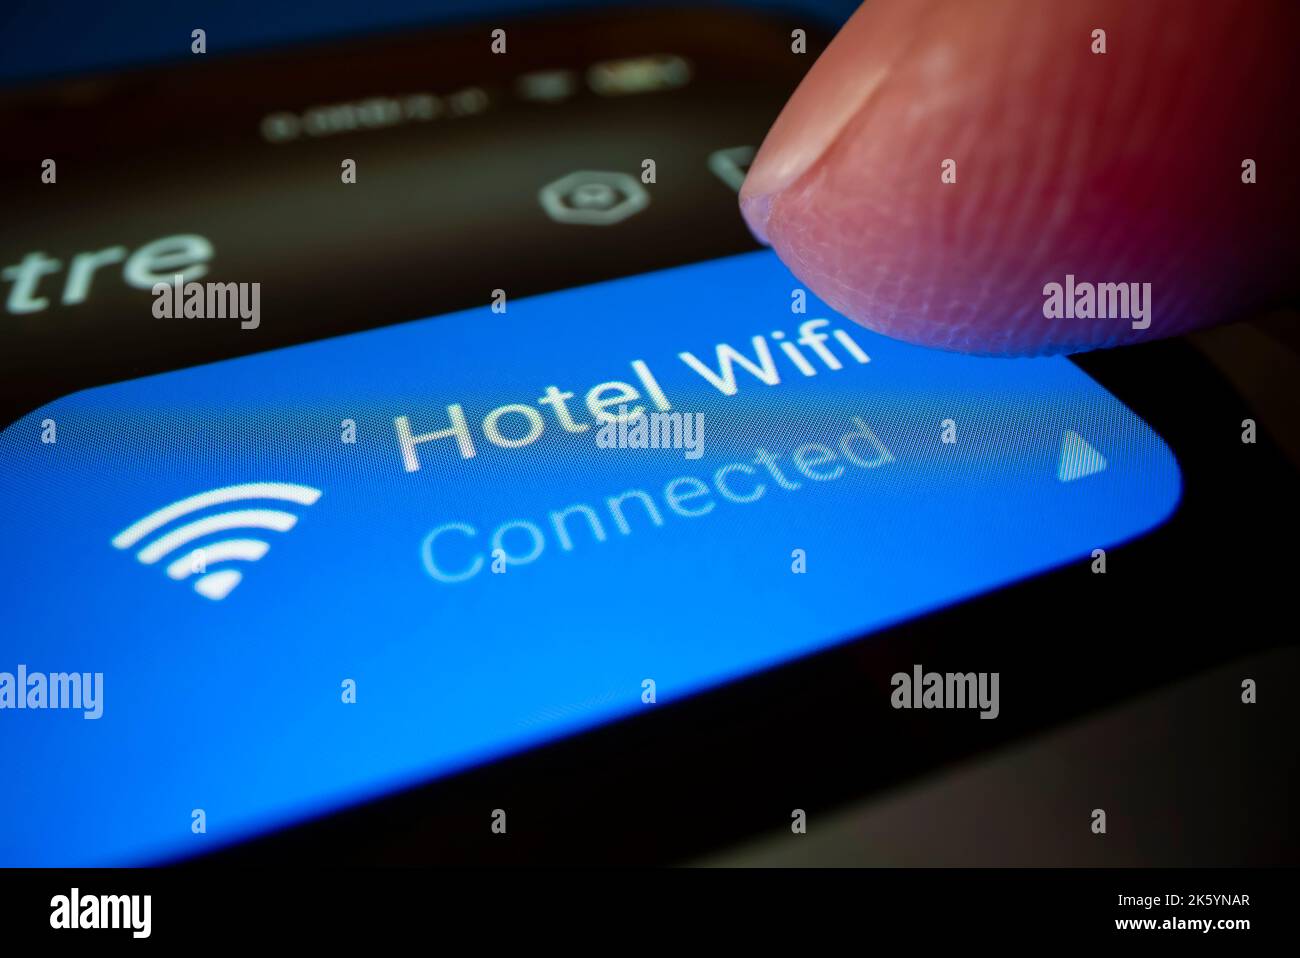 Vue rapprochée de la connexion d'un smartphone au wi-fi de l'hôtel, prise de vue avec un objectif à sonde macro Banque D'Images